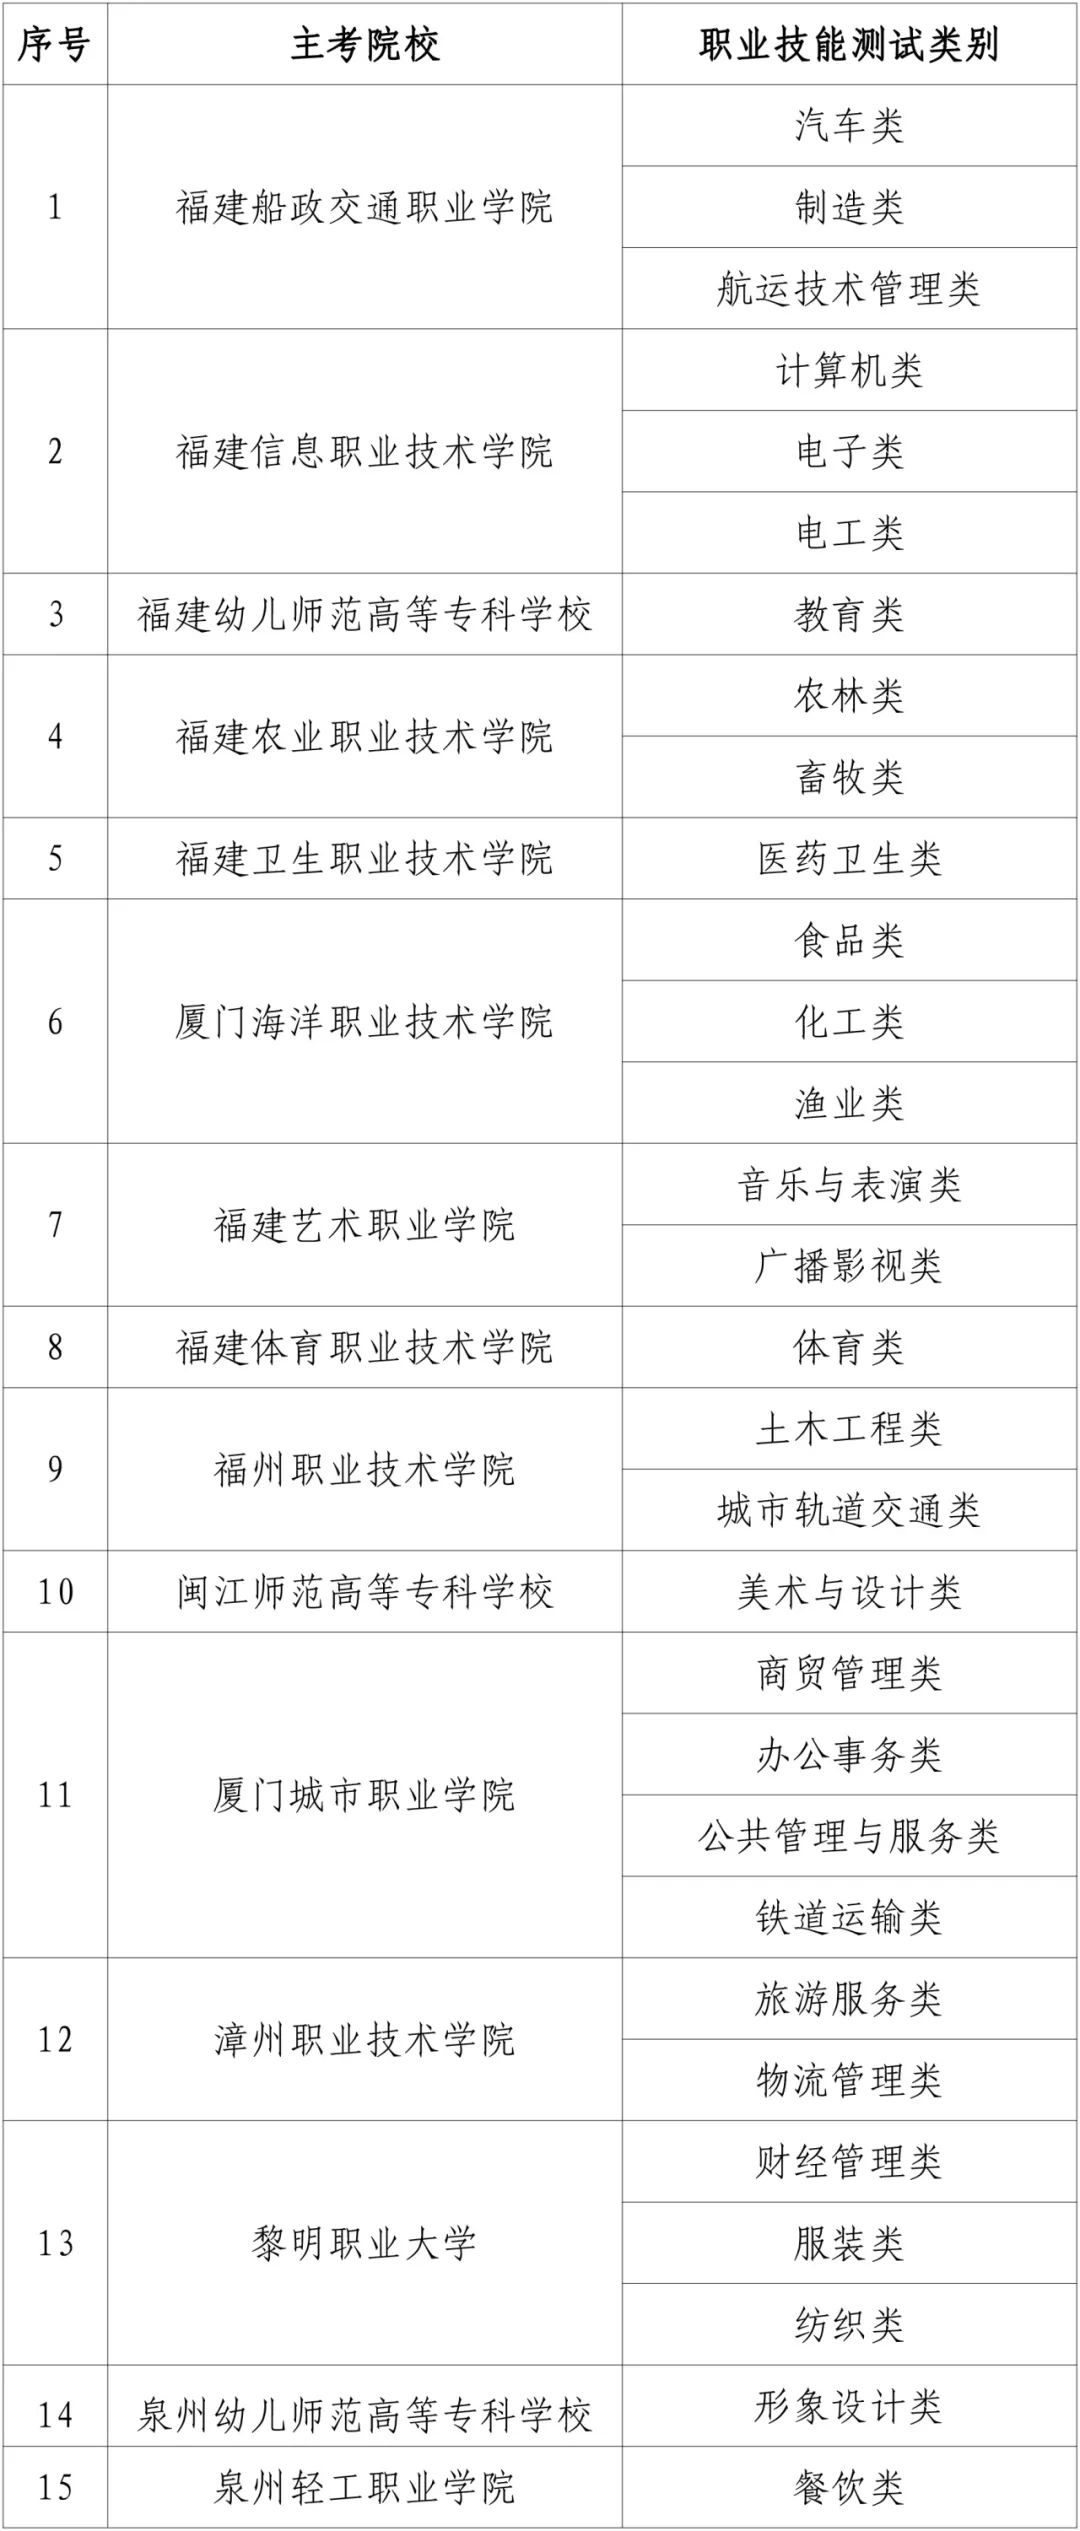 福建省高职院校分类考试招生职业技能测试主考院校名单